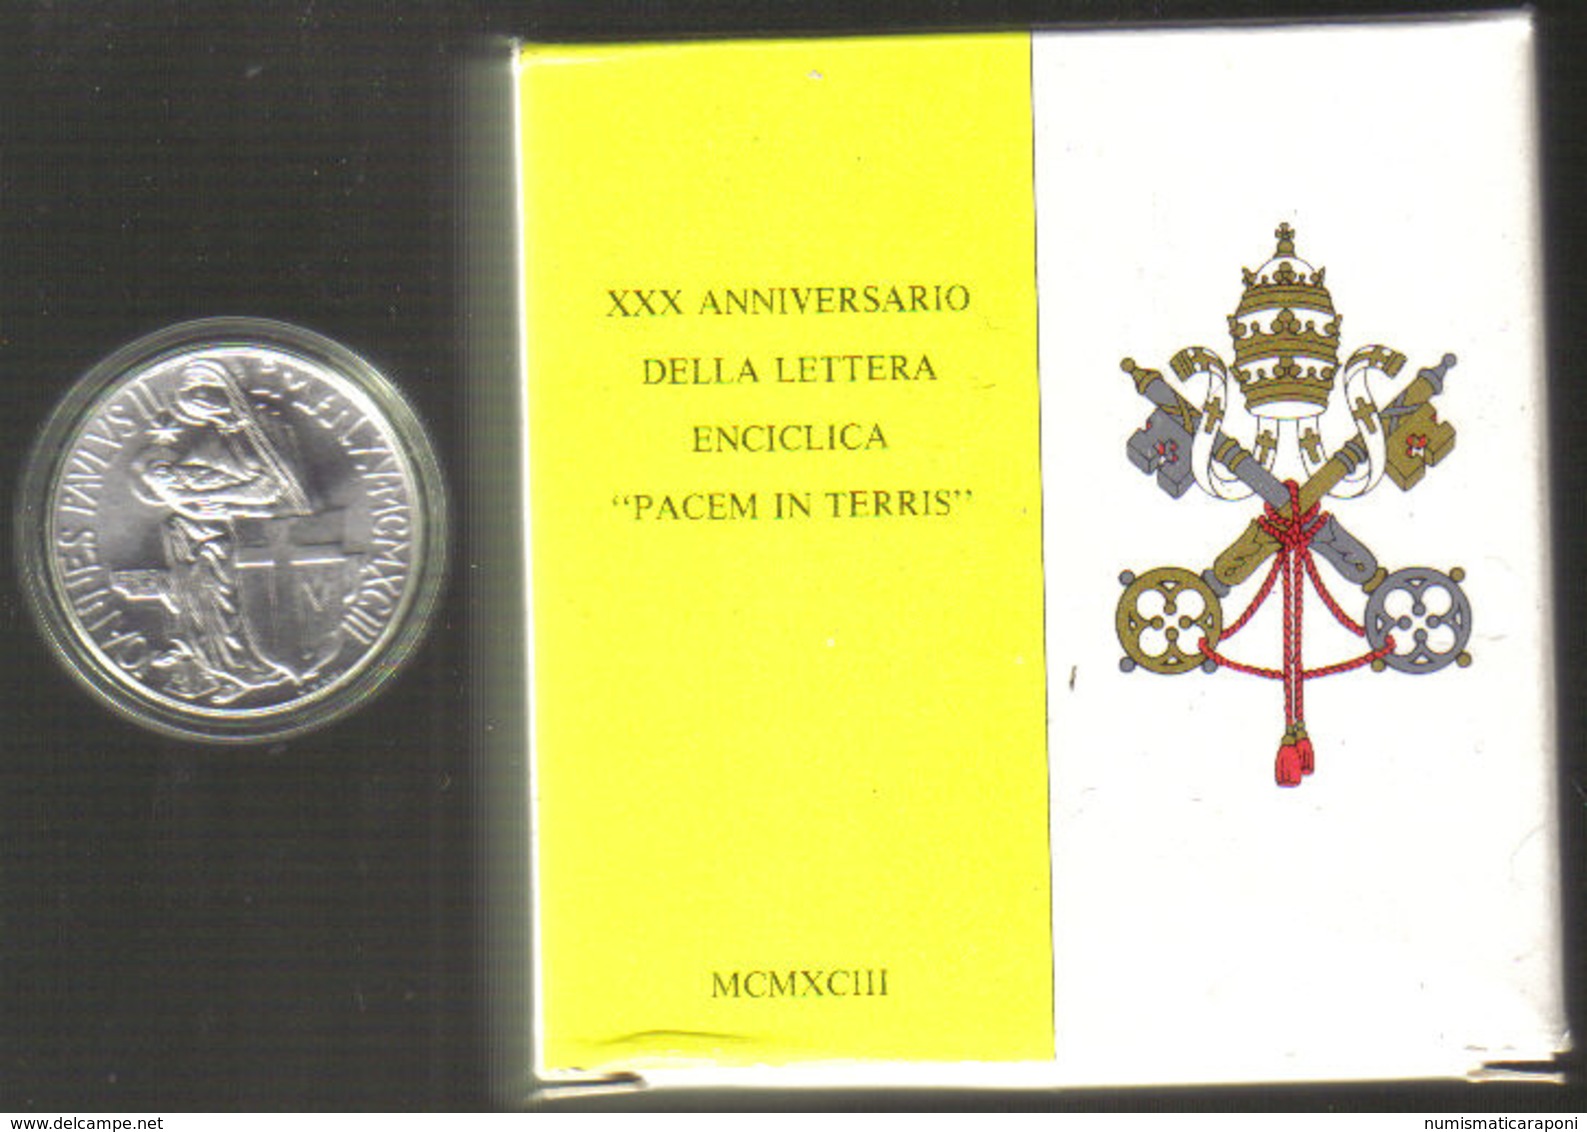 Vaticano 1993 Pacem In Terris  Fdc UFFICIALE SUPER OFFERTA - Vatican